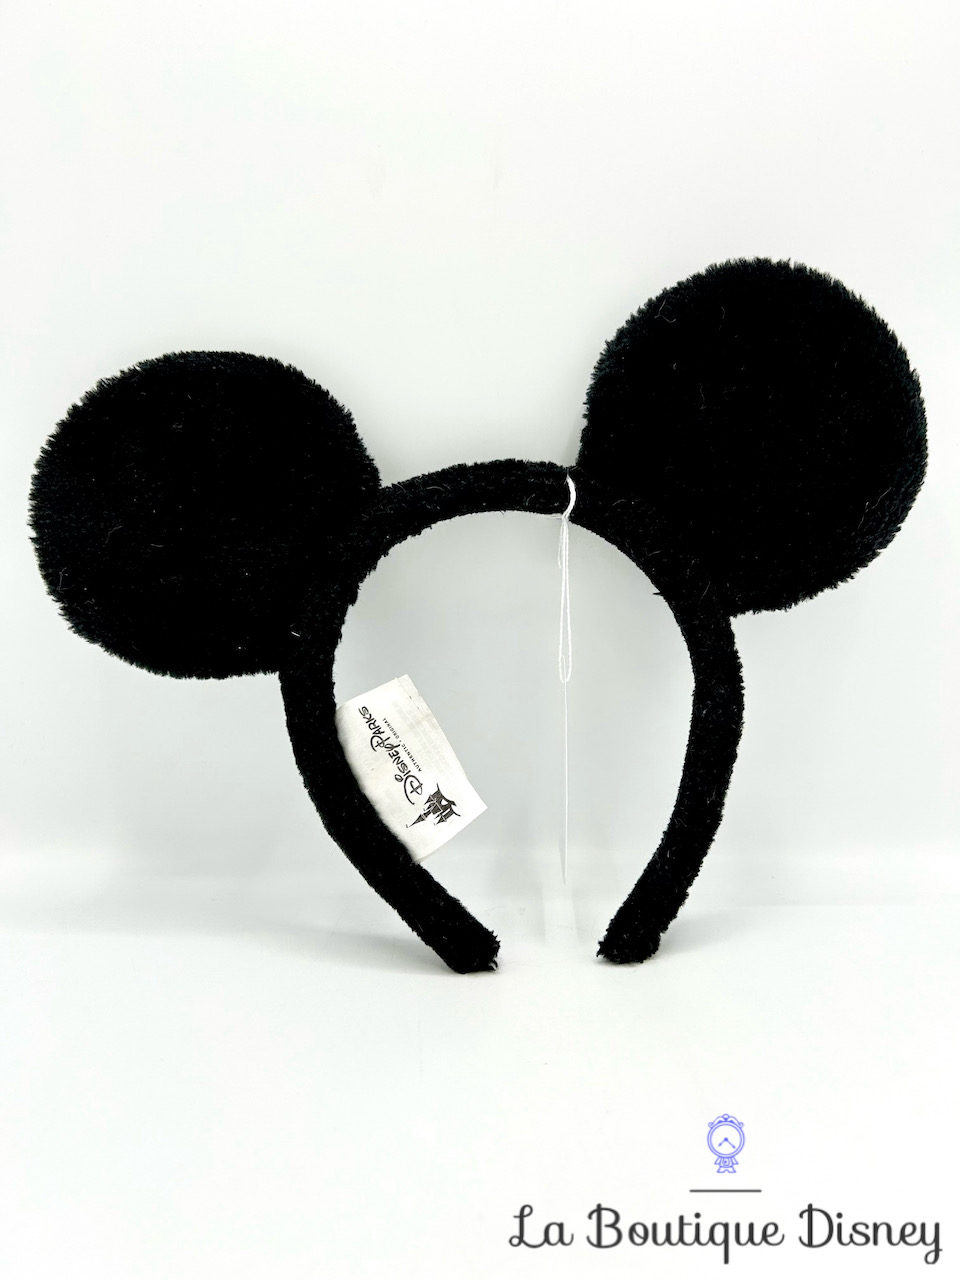 Serre tête Oreilles Mickey Mouse Uni Noir Disney Parks 2017 Ears Disneyland classique